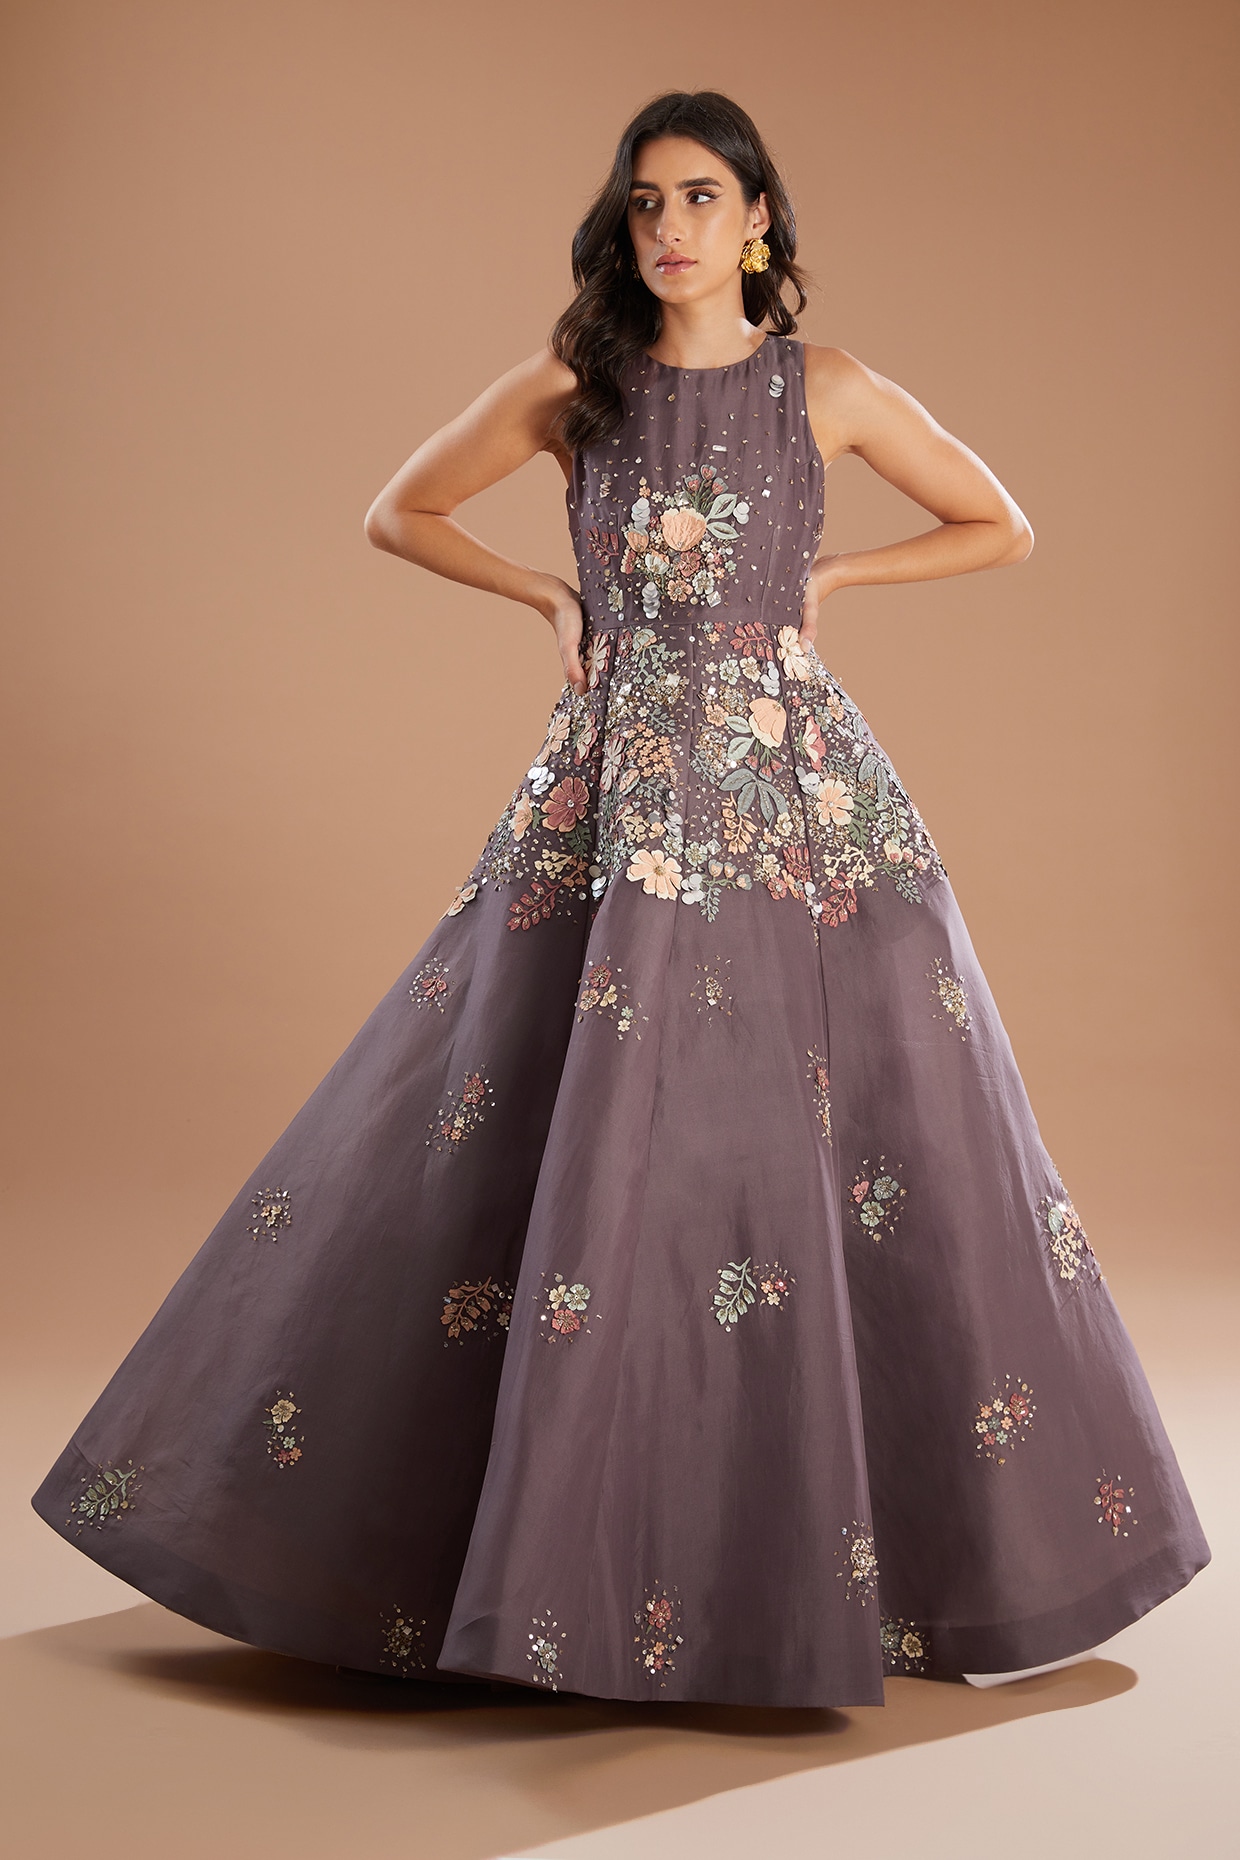 Beautiful | Cotton | Chiffon | #gowns | Long Frock | Long Dress | Design  Ideas For Girls | latestgown #gownideas #Longdress #fashiontrendsbysimran |  Beautiful | Cotton | Chiffon | #gowns |